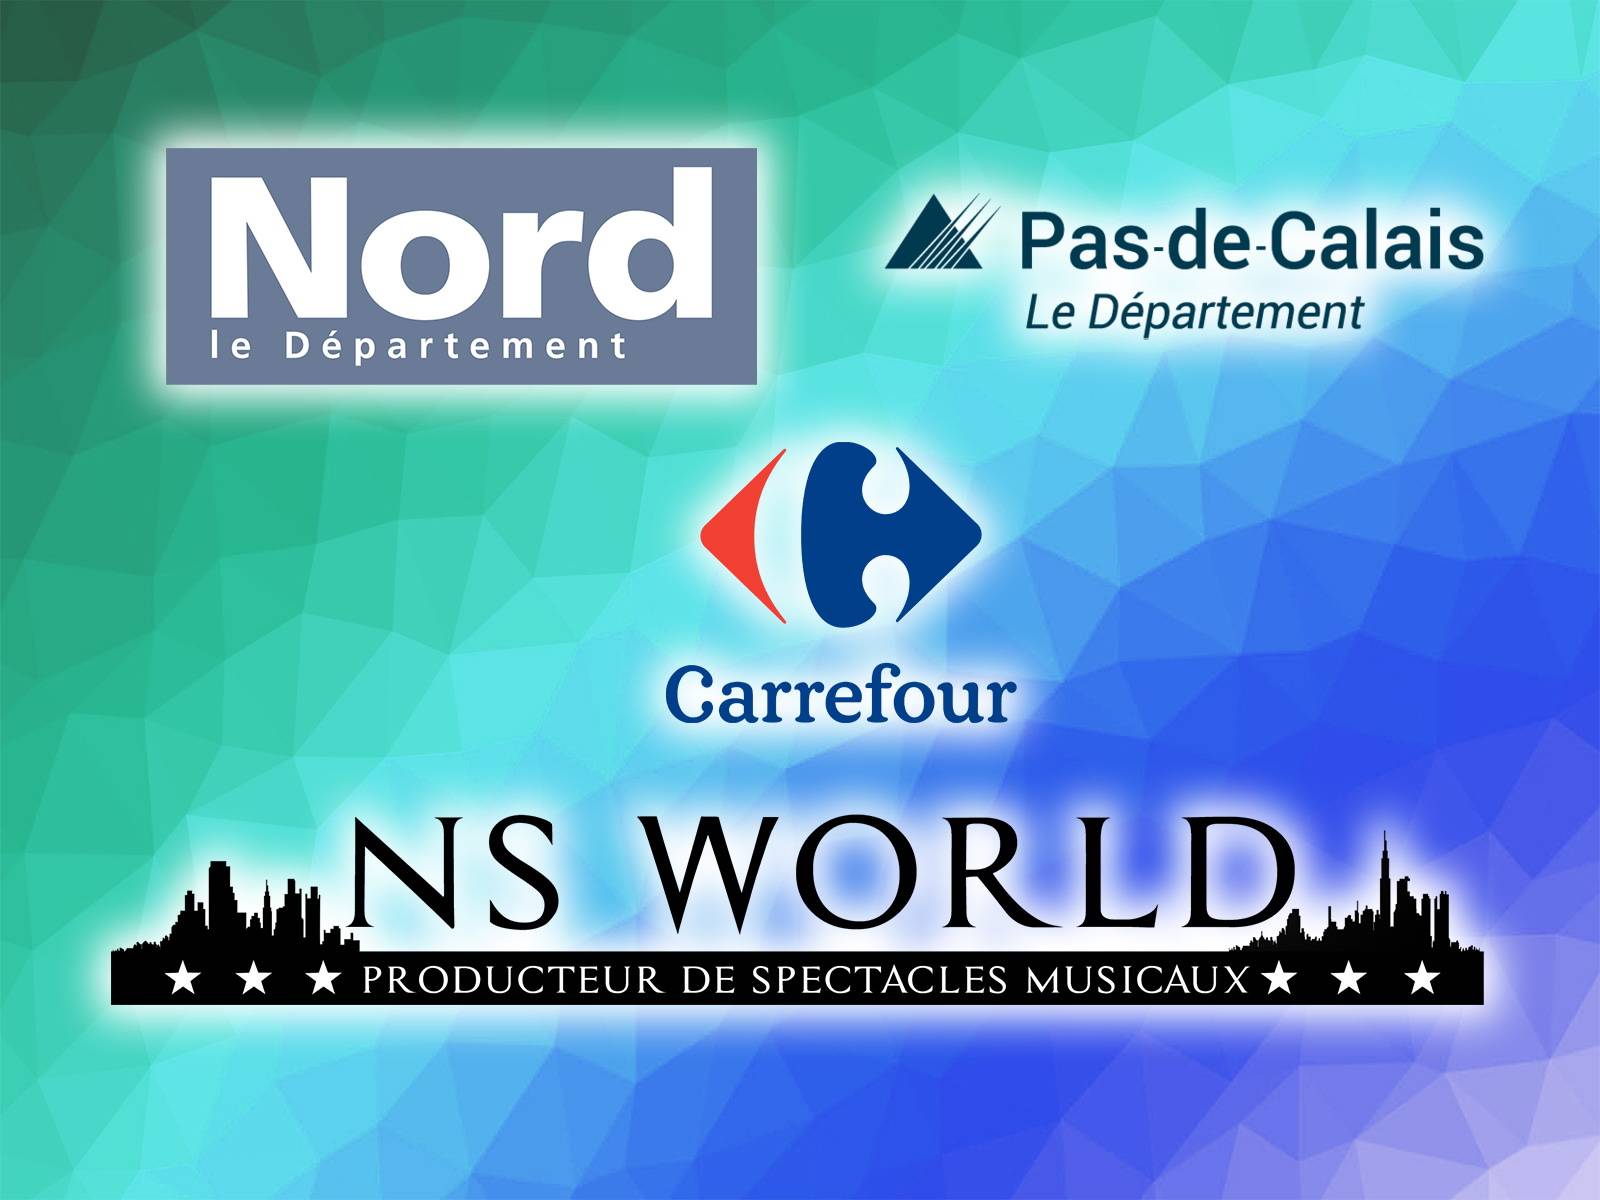 Les hypermarchés Carrefour des départements du Pas de Calais et du Nord (59 et 62) nous ont confié l'organisation de nombreux spectacles musicaux